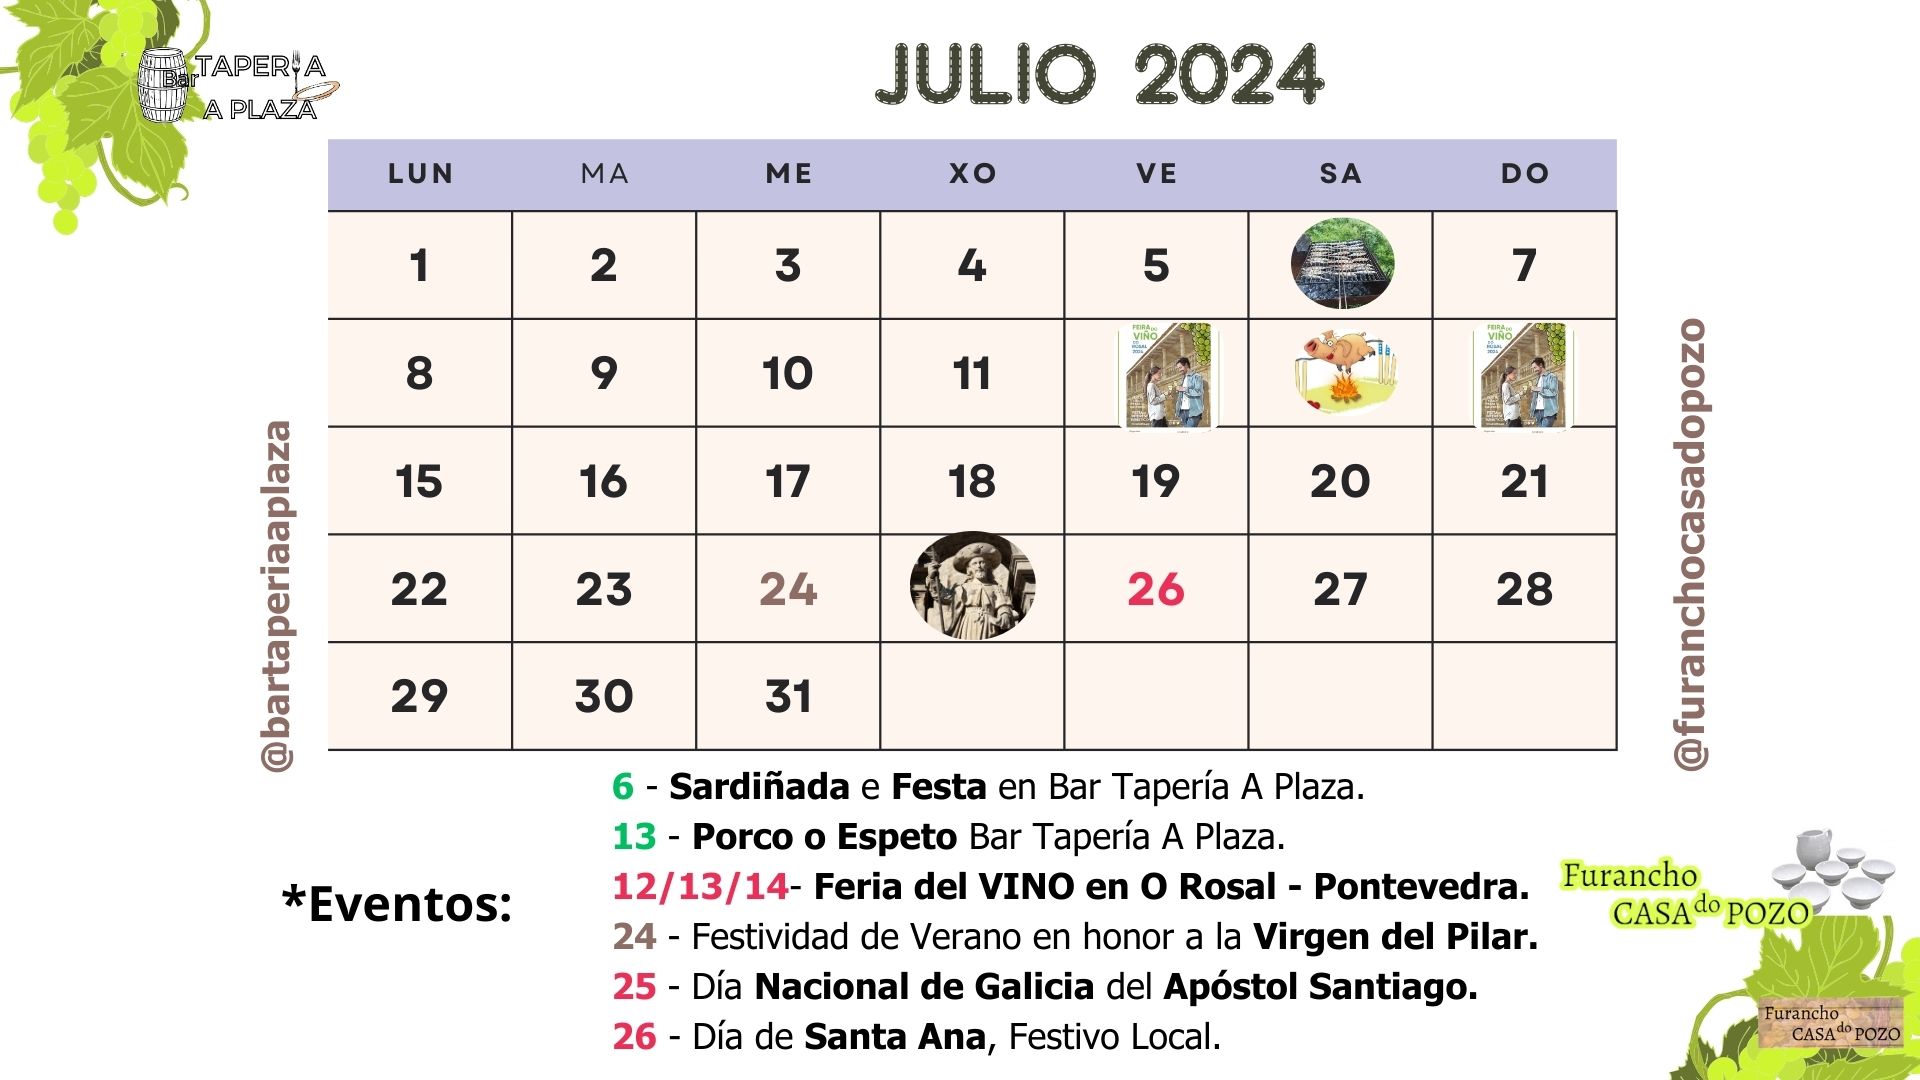 Eventos para este mes de Julio 2024